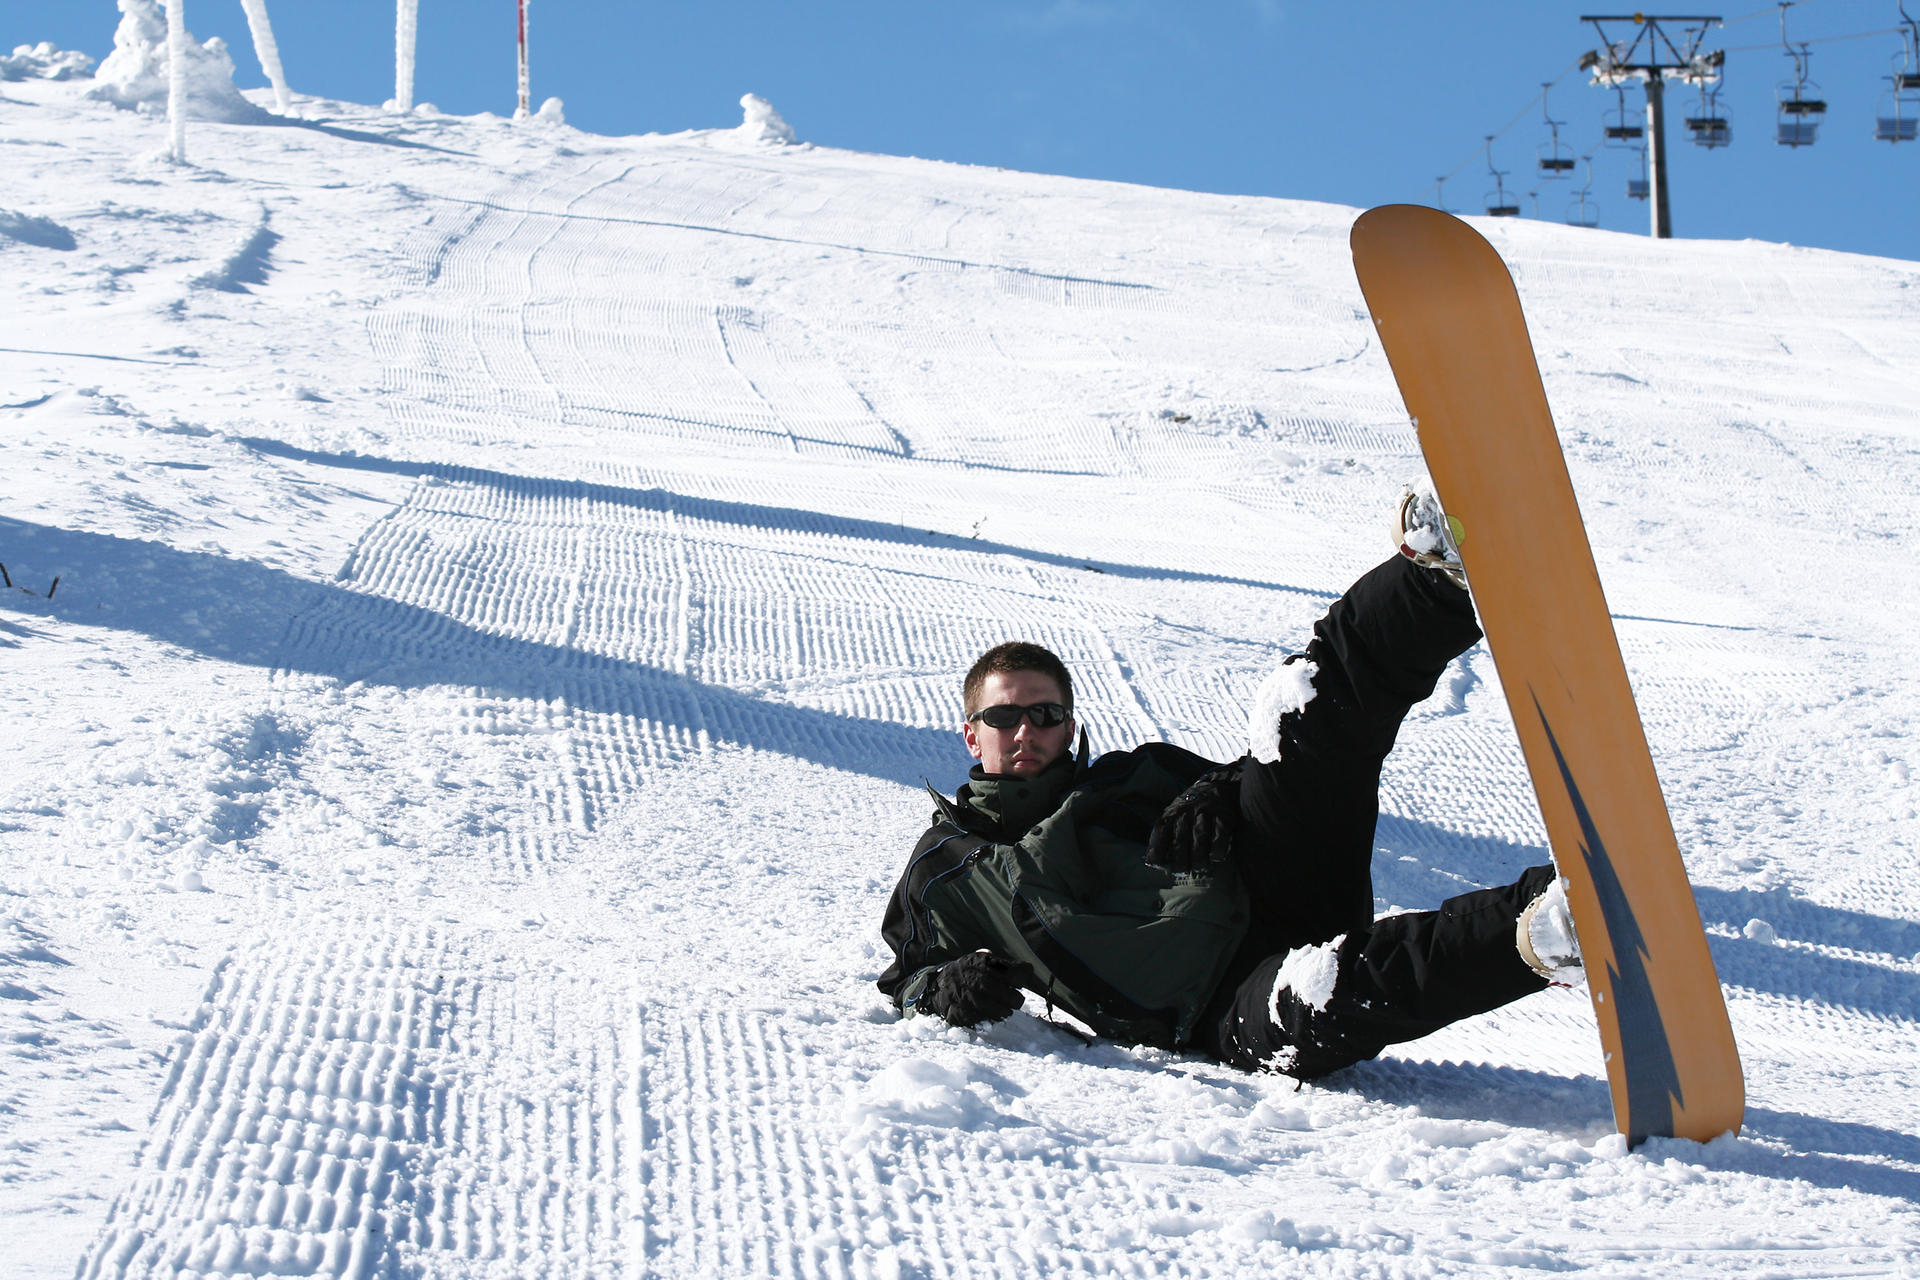 Mm Loose mucus Als Einsteiger das richtige Snowboard kaufen